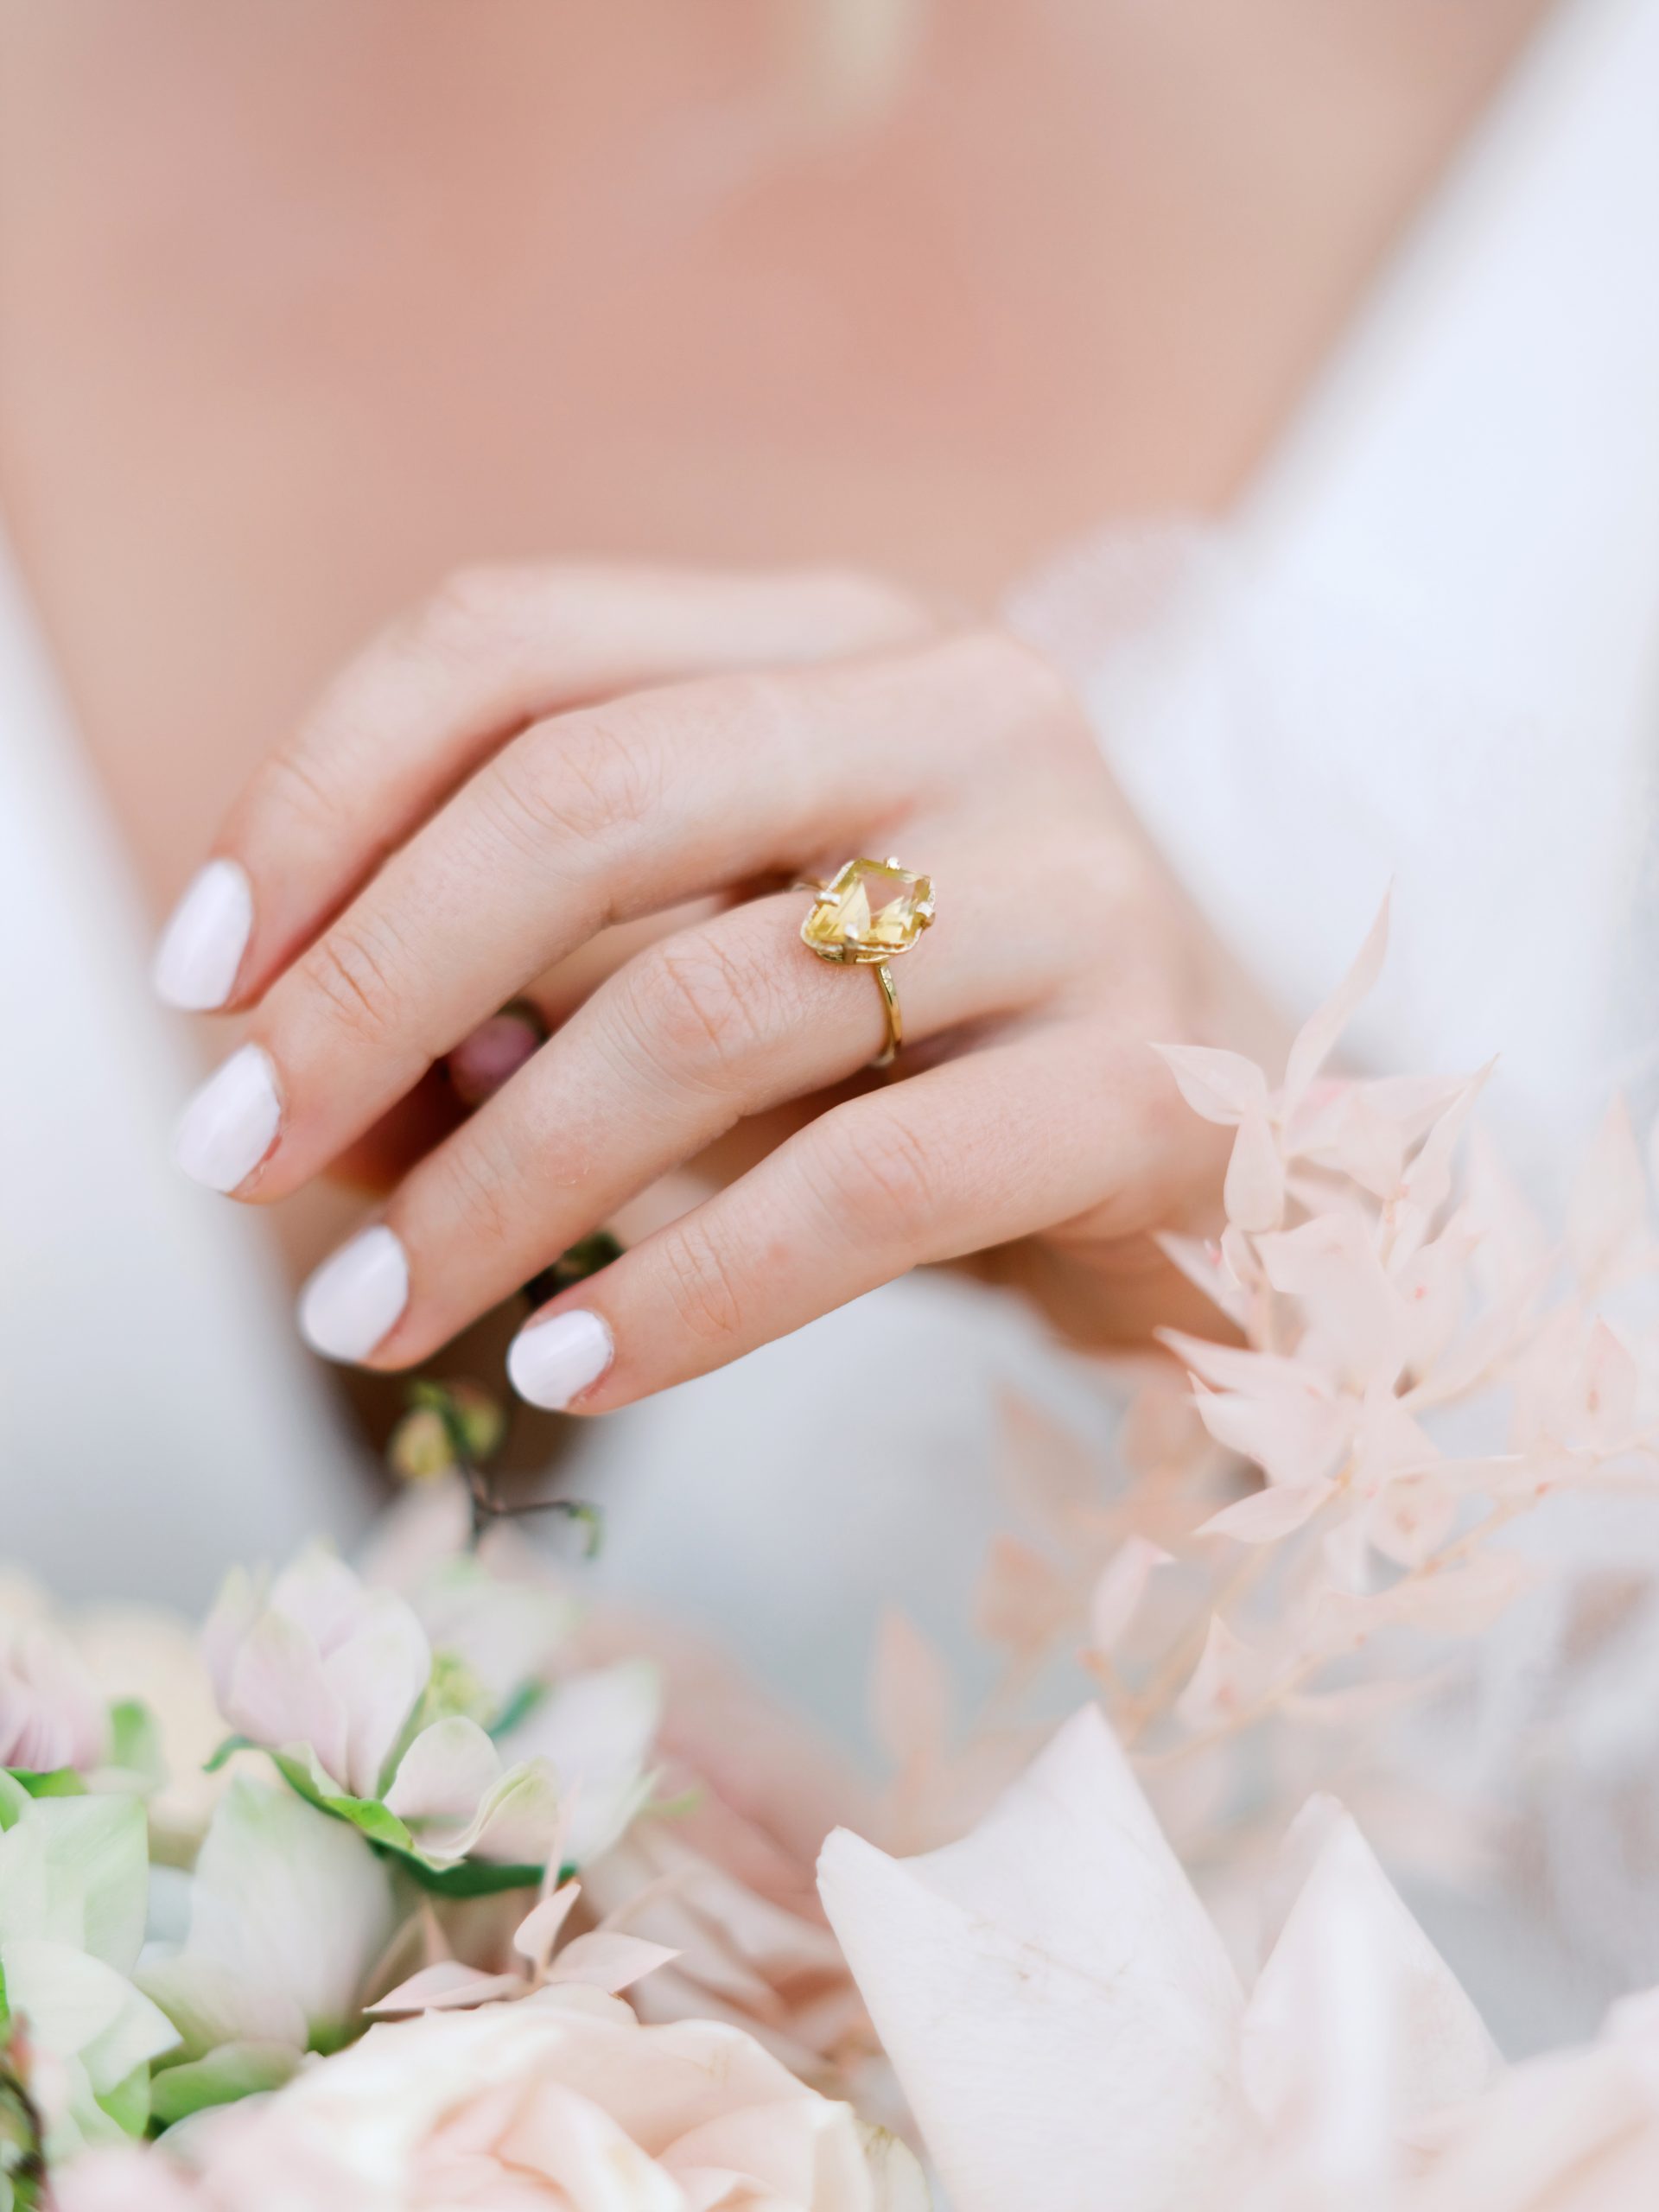 Bague de fiançailles sur l'annulaire avec des ongles manucurés et des fleurs